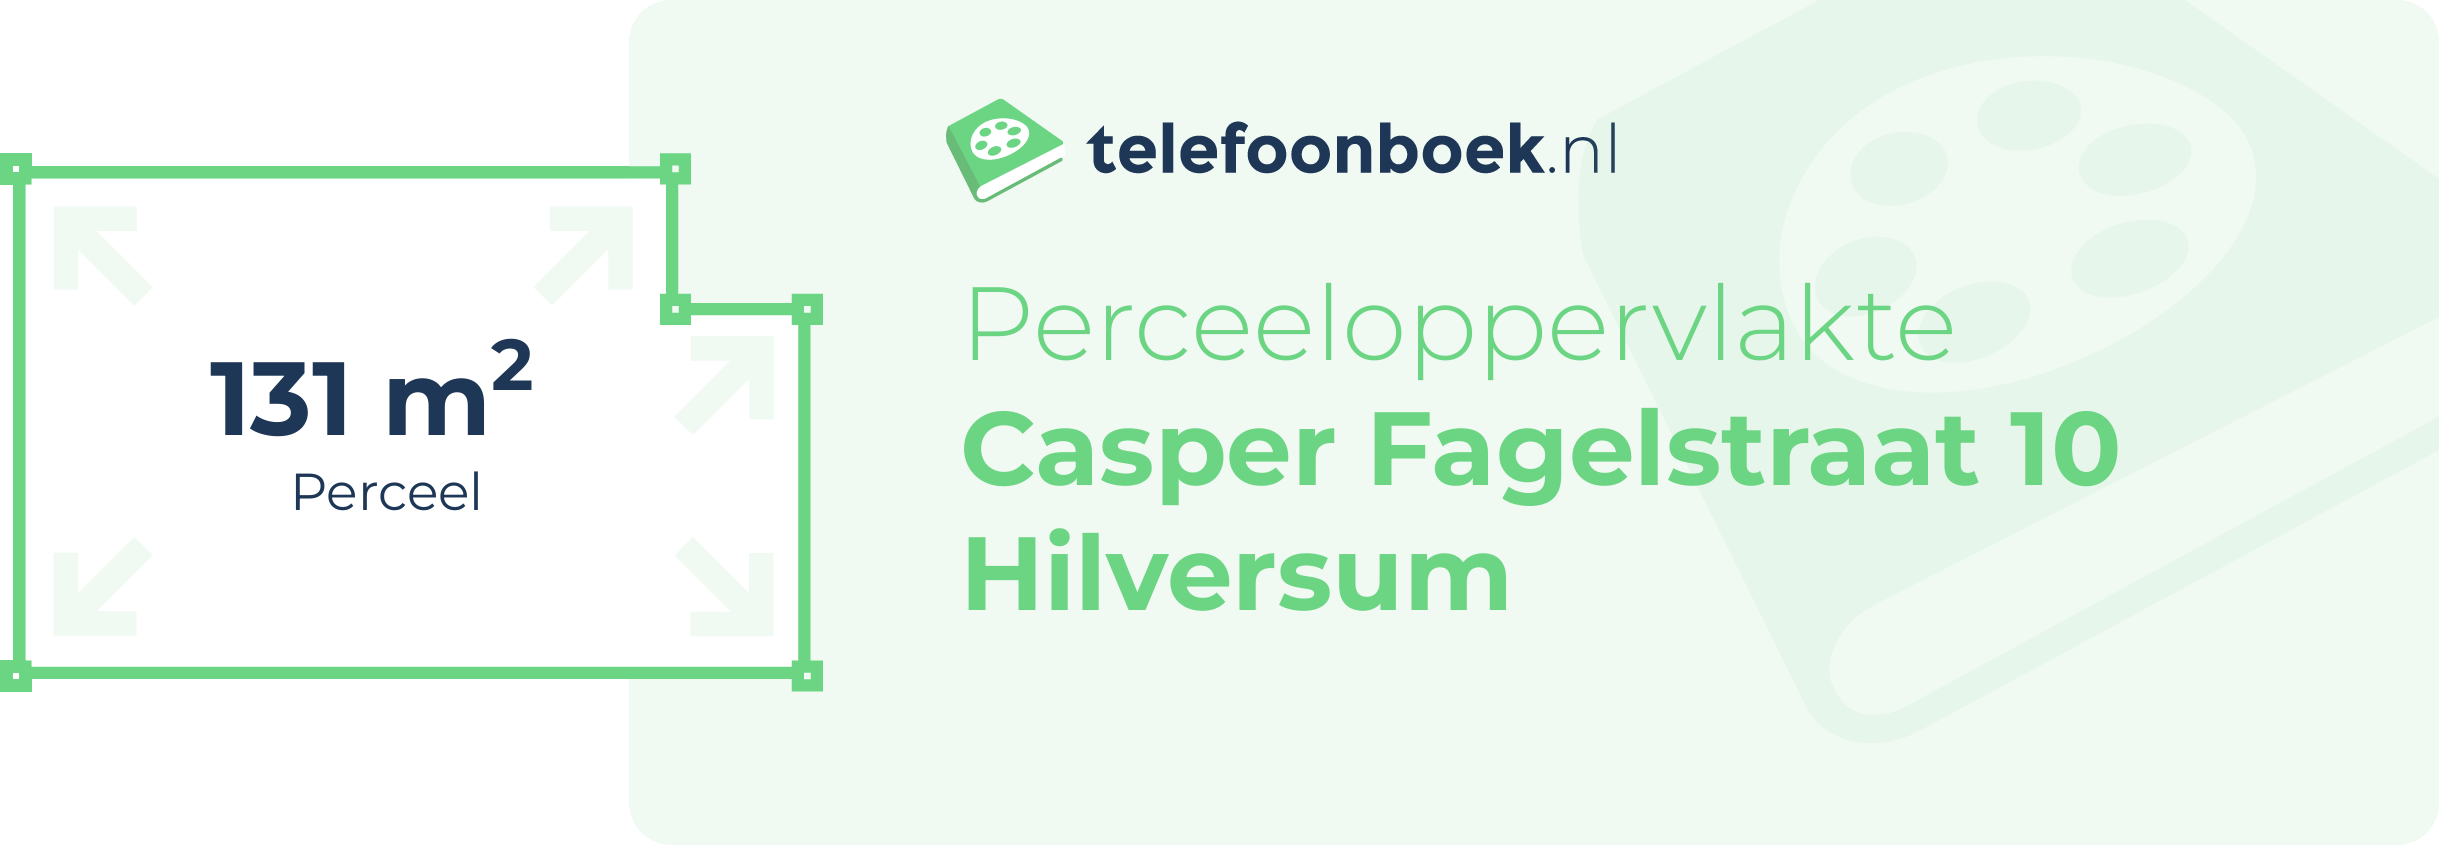 Perceeloppervlakte Casper Fagelstraat 10 Hilversum